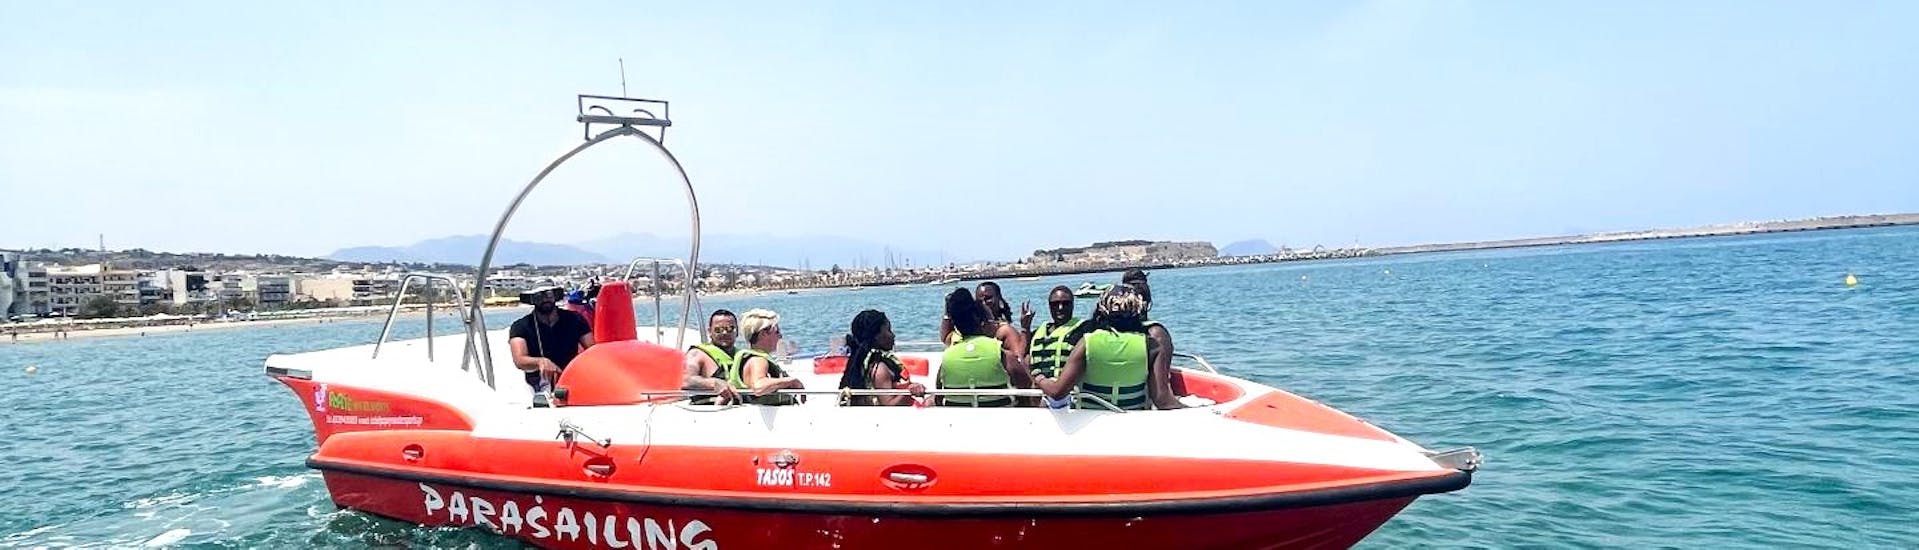 Vue sur le bateau lors de l'Excursion en bateau depuis Réthymnon aux grottes des pirates avec Baignade avec Popeye Watersports Crete.